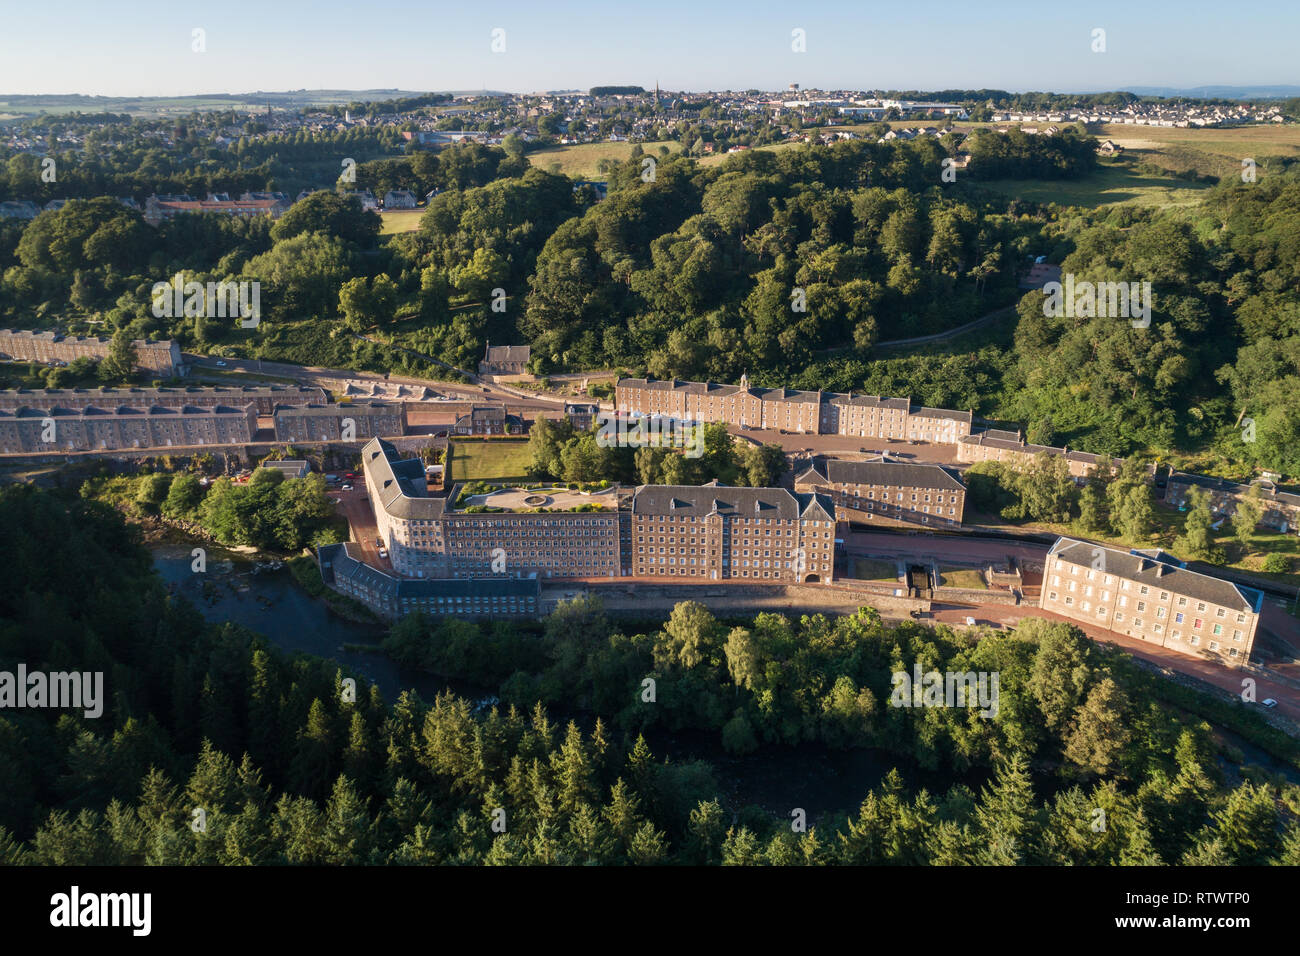 Luftbild übersicht Weltkulturerbe New Lanark in South Lanarkshire, Schottland. Stockfoto